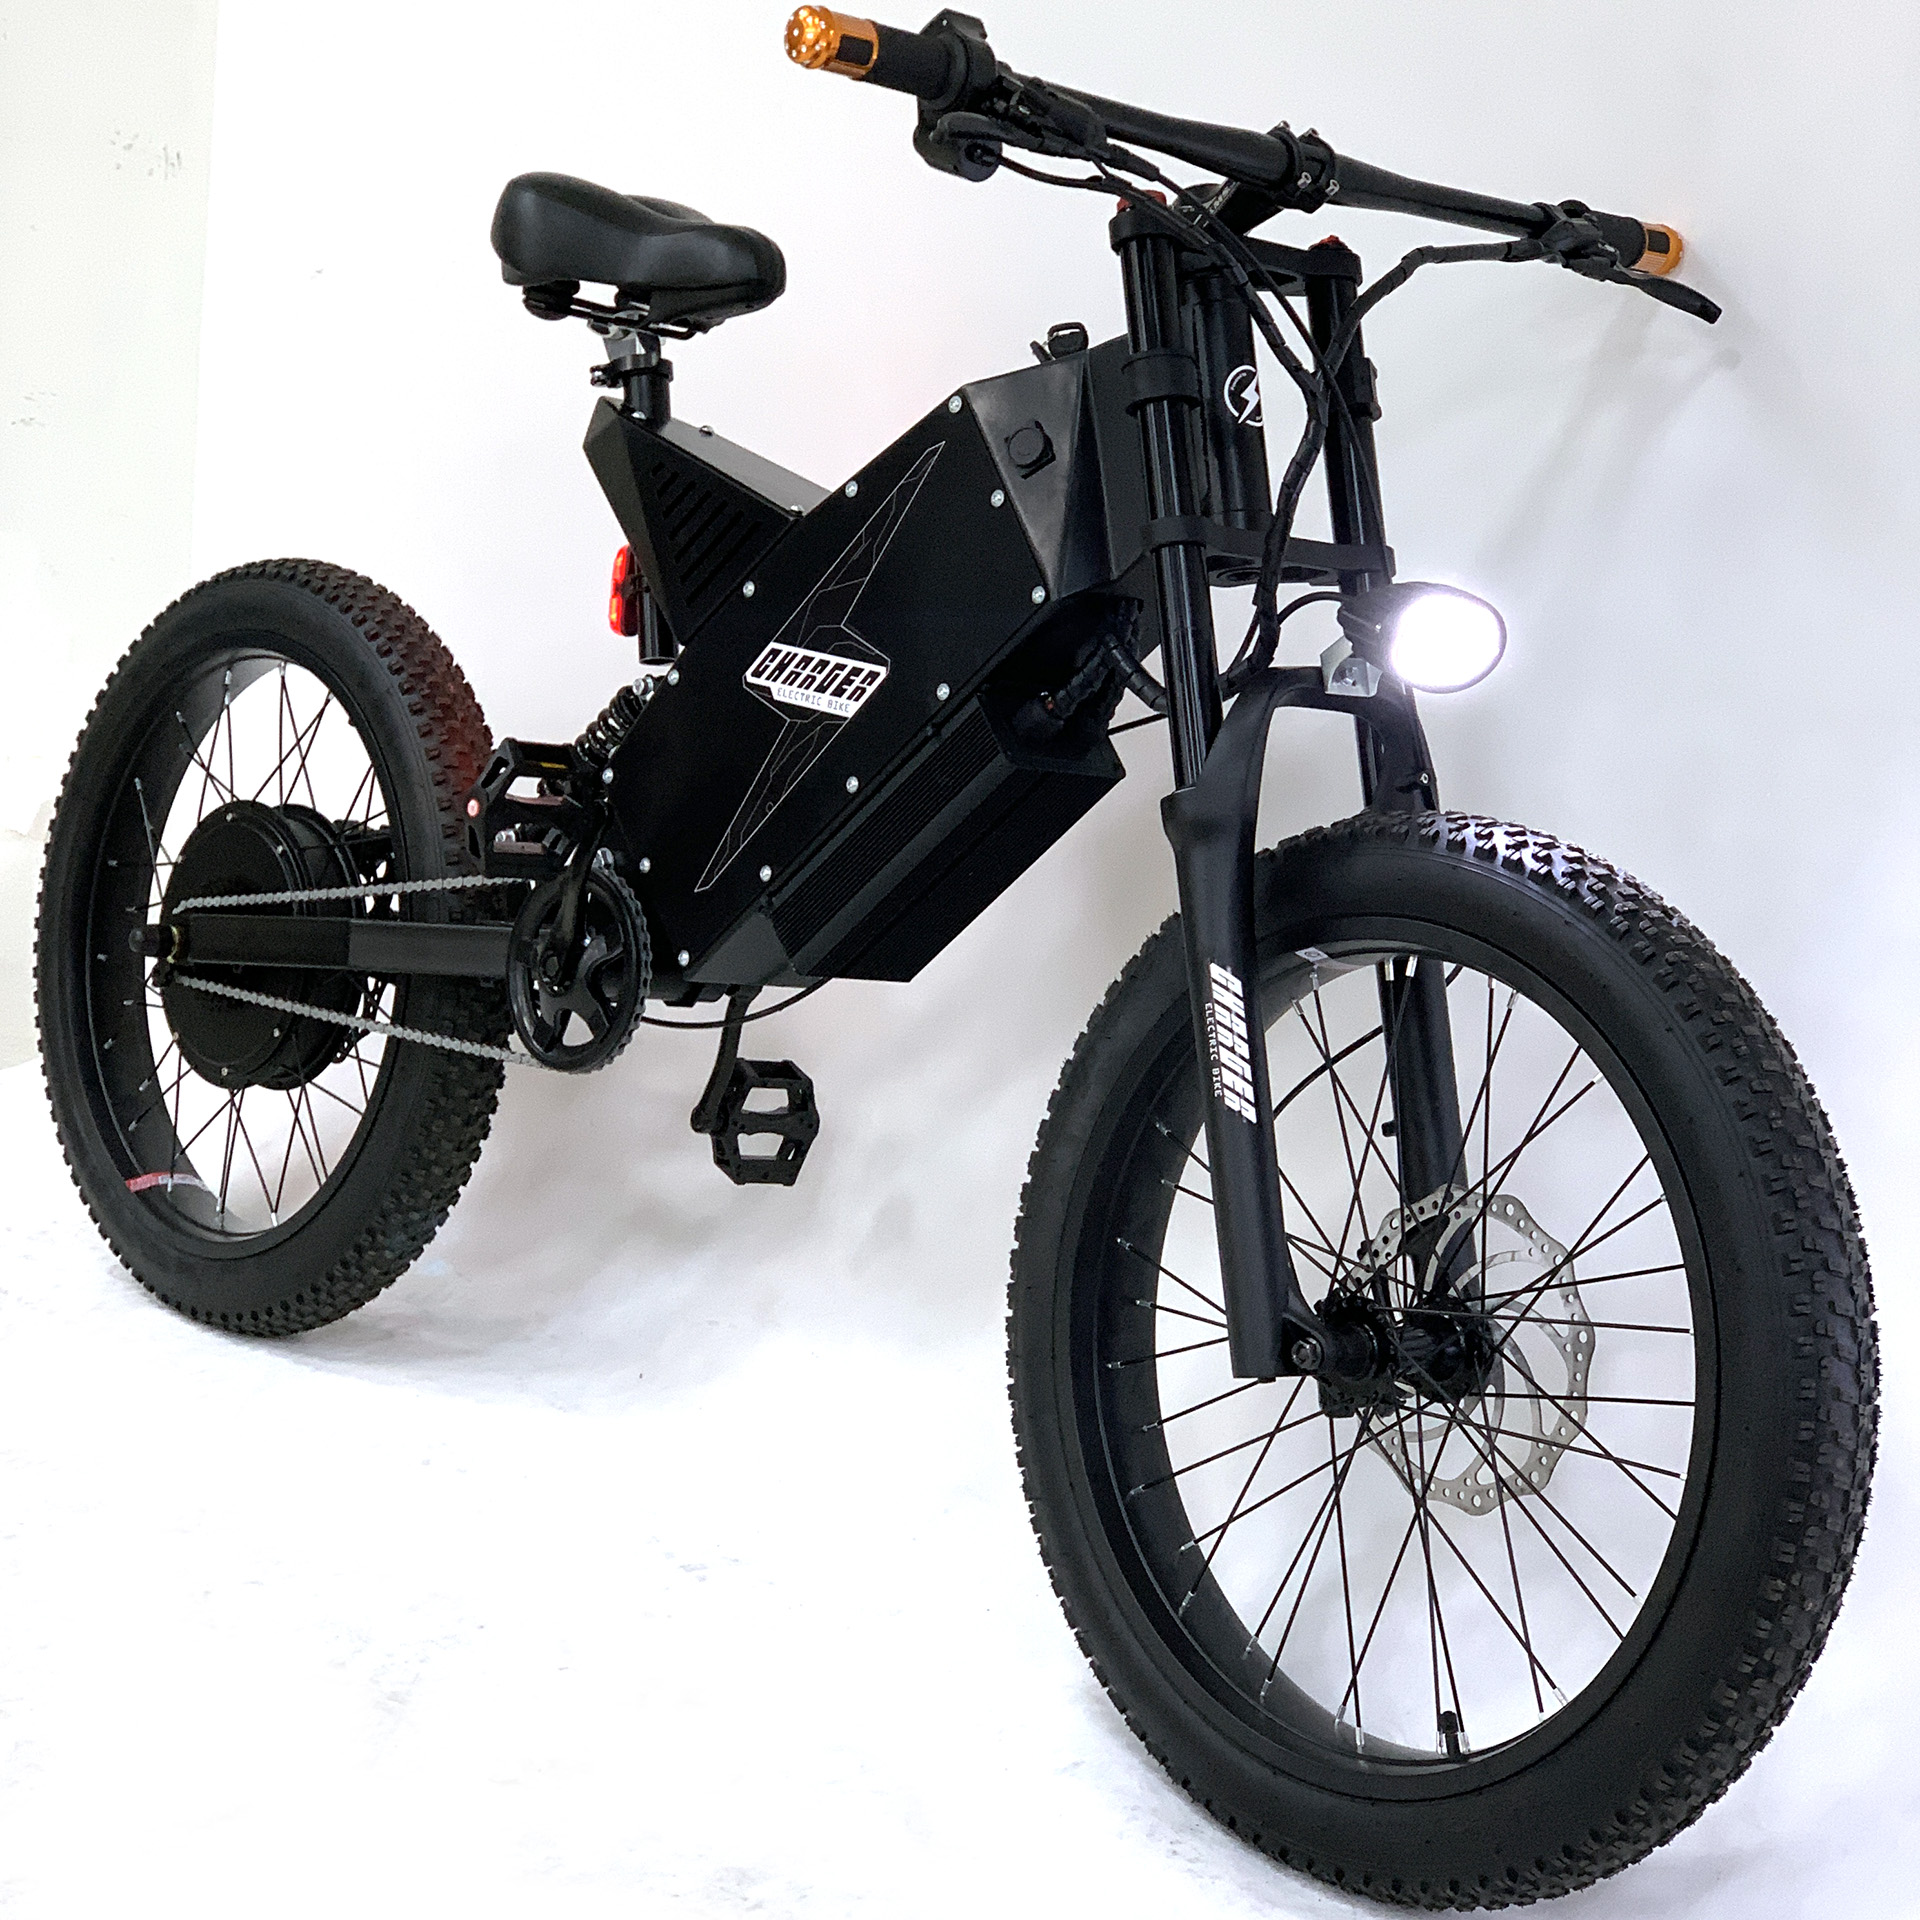 Charger 4K MK IV electric bike